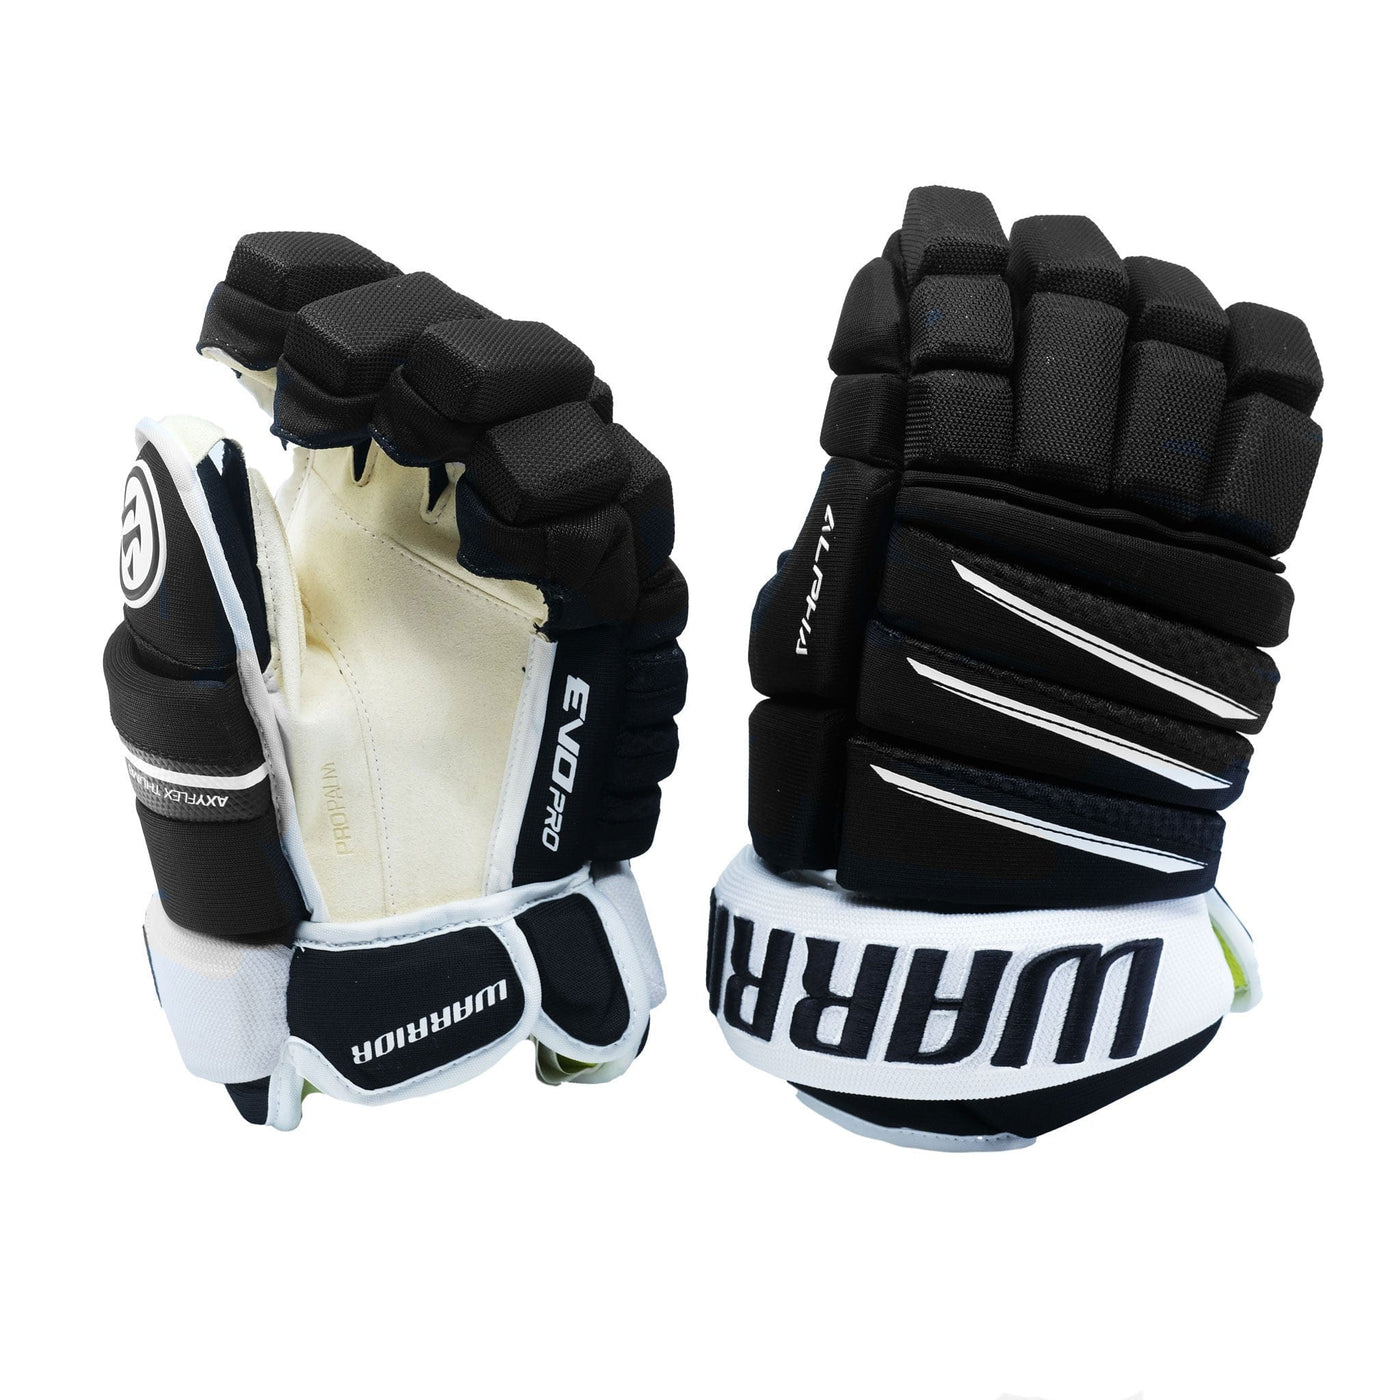 Warrior Evo Pro Senior Hockey Gloves (2020)